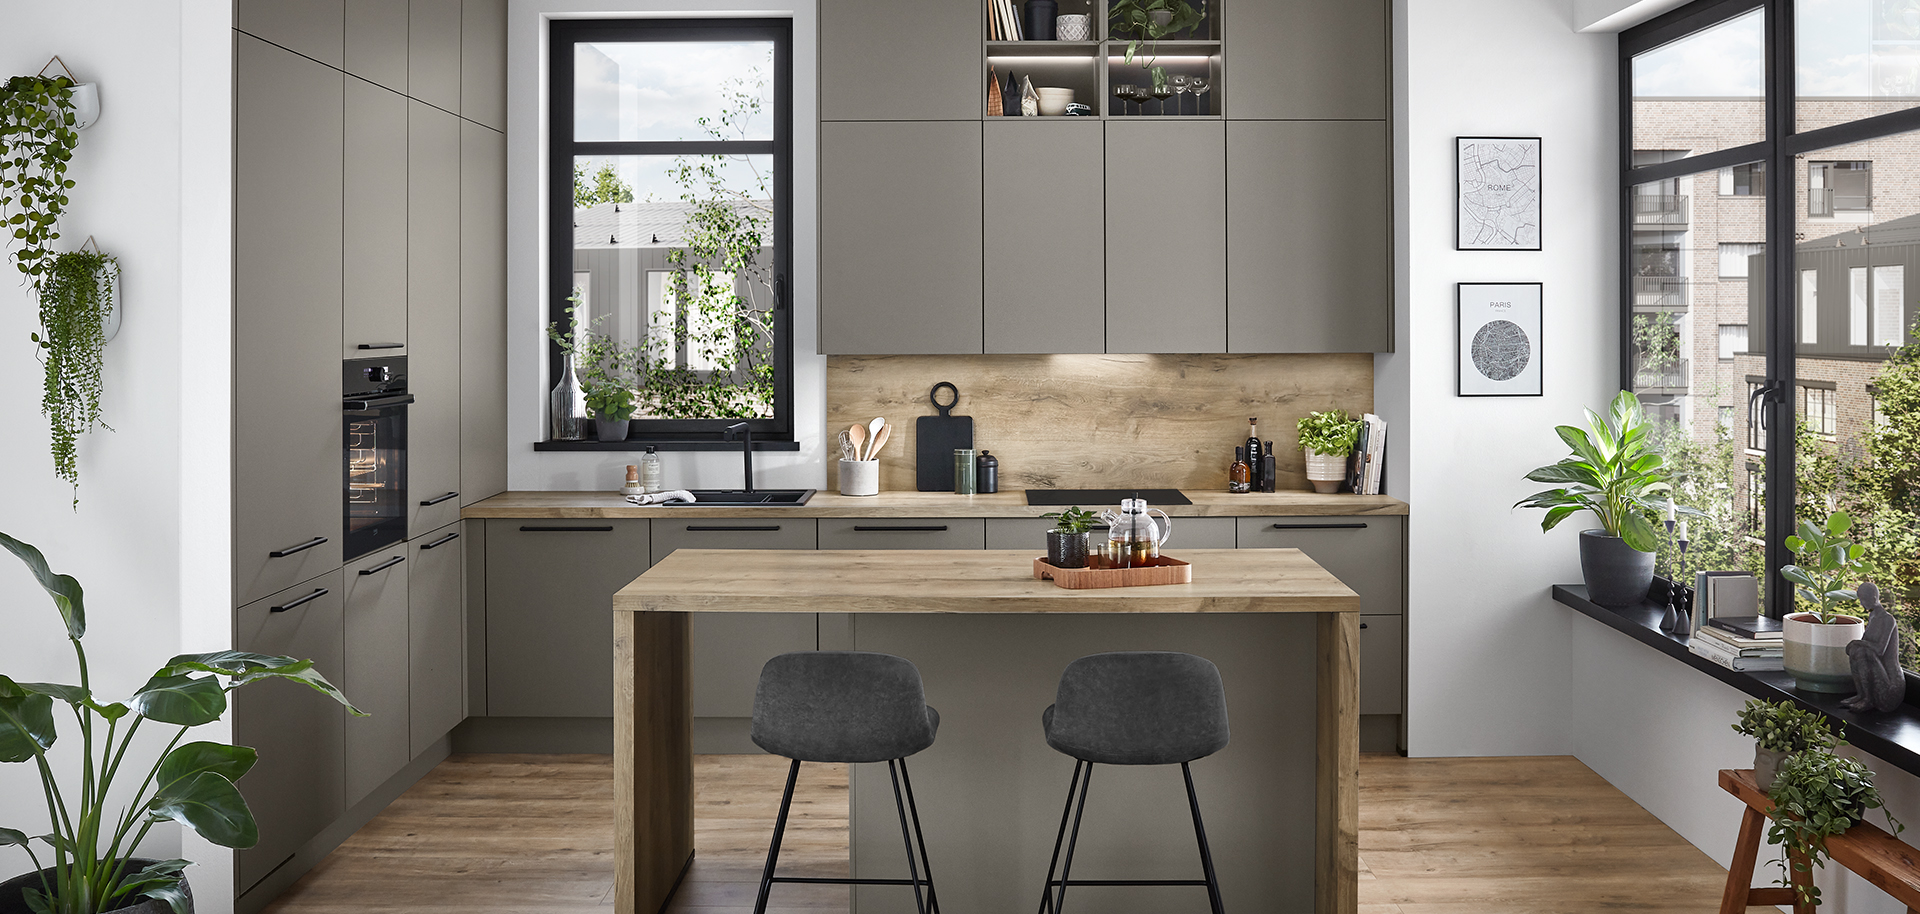 Moderne Küchengestaltung mit eleganten grauen Schränken, Holzböden, einer zentralen Insel mit Hockern und Tageslicht, das durch Zimmerpflanzen ergänzt wird.